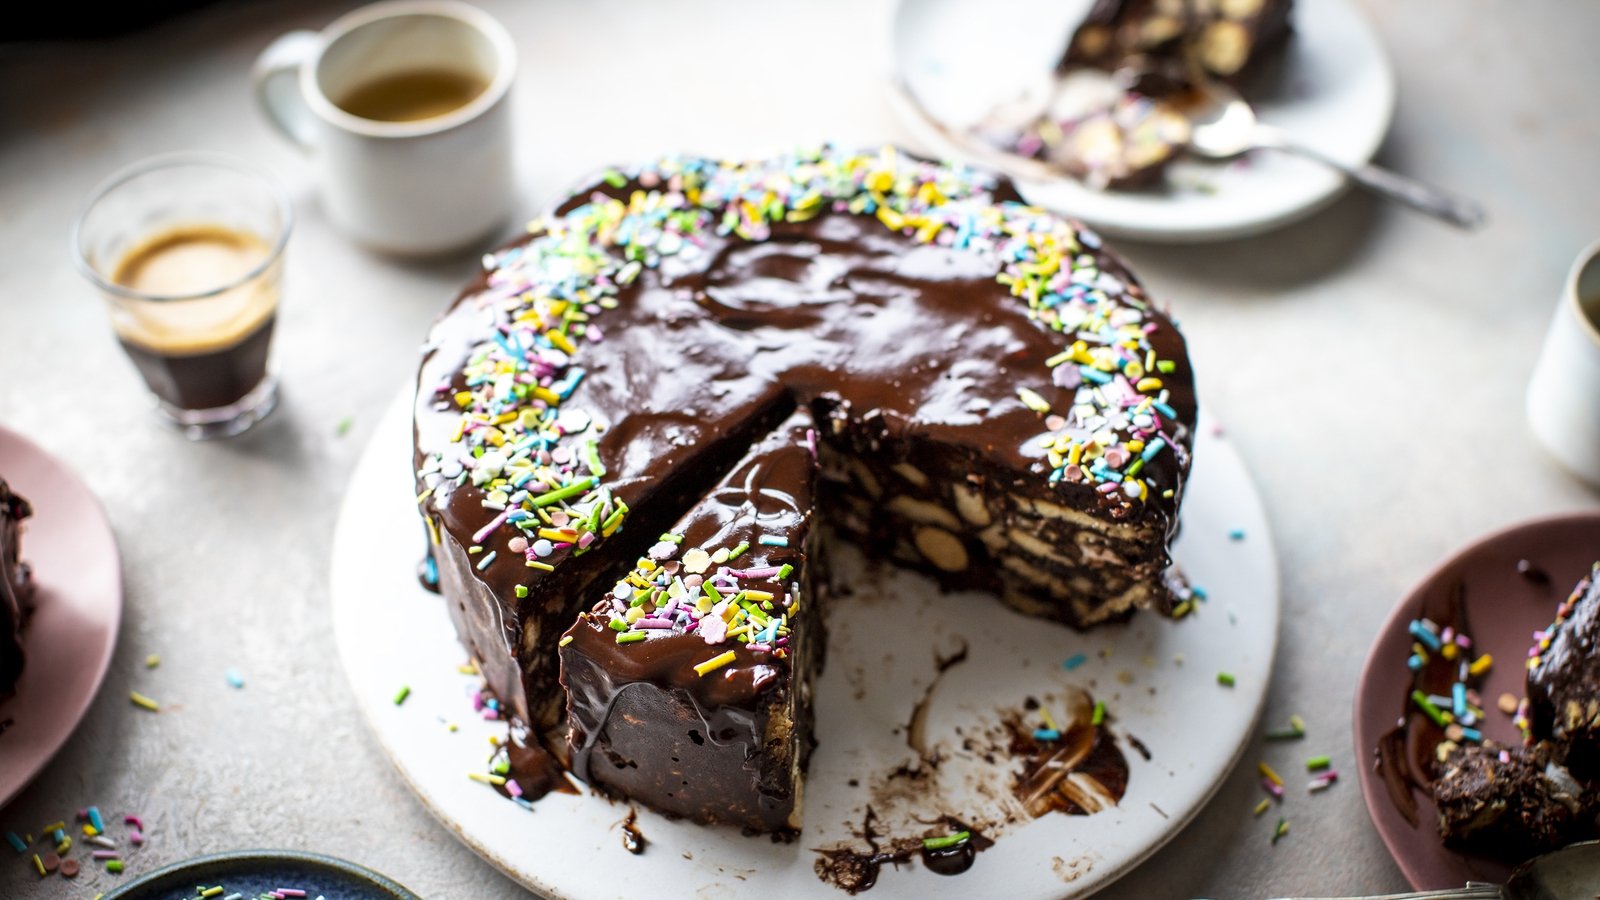 3 ingredients chocolate cake/parle g cake/parle g biscuit ka cake/biscuit  cake recipe - YouTube